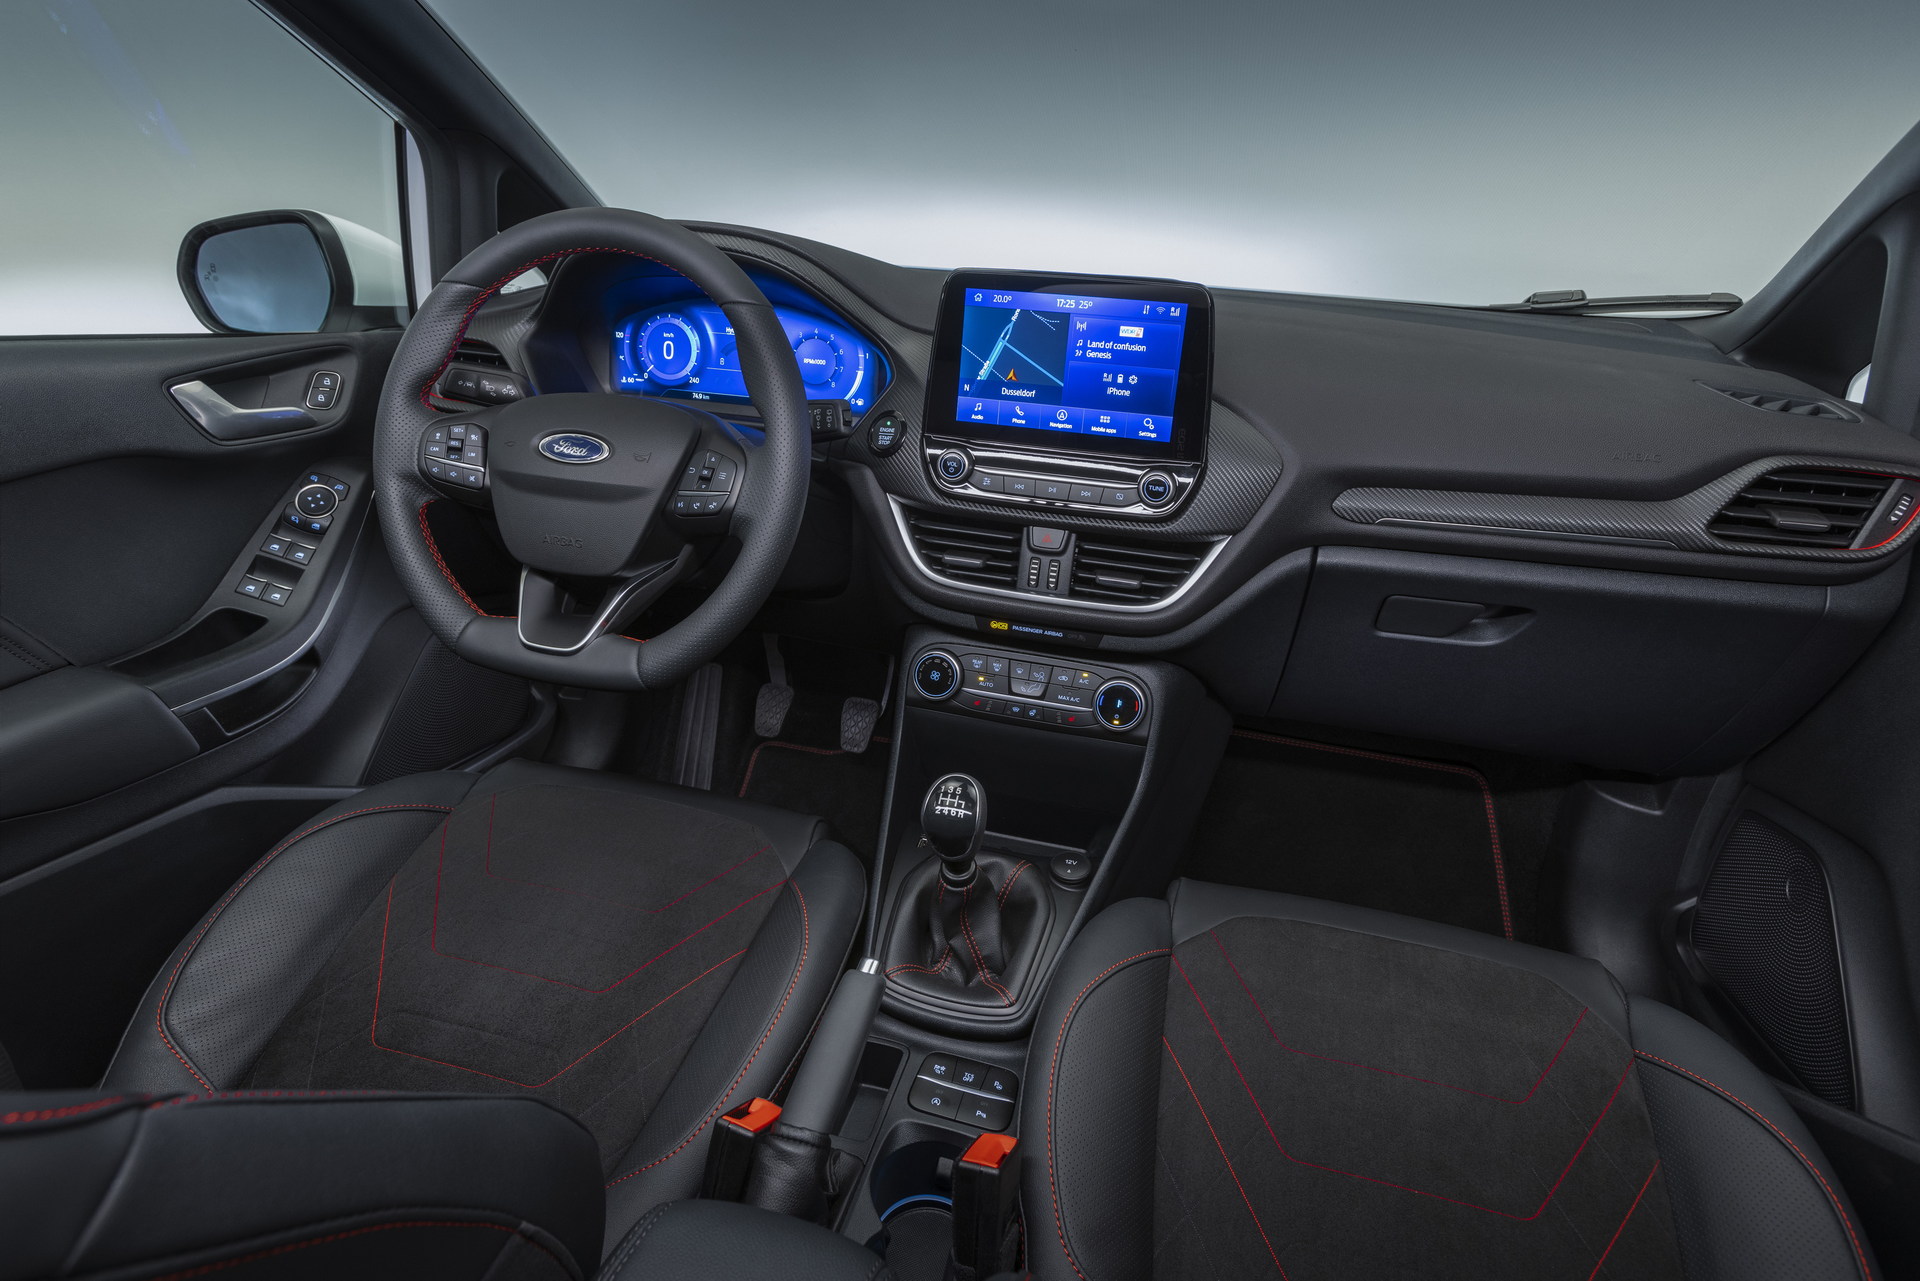 Ford Fiesta 10L AT Ecoboost 5 Cửa 2018 Tại Ford Bình Triệu